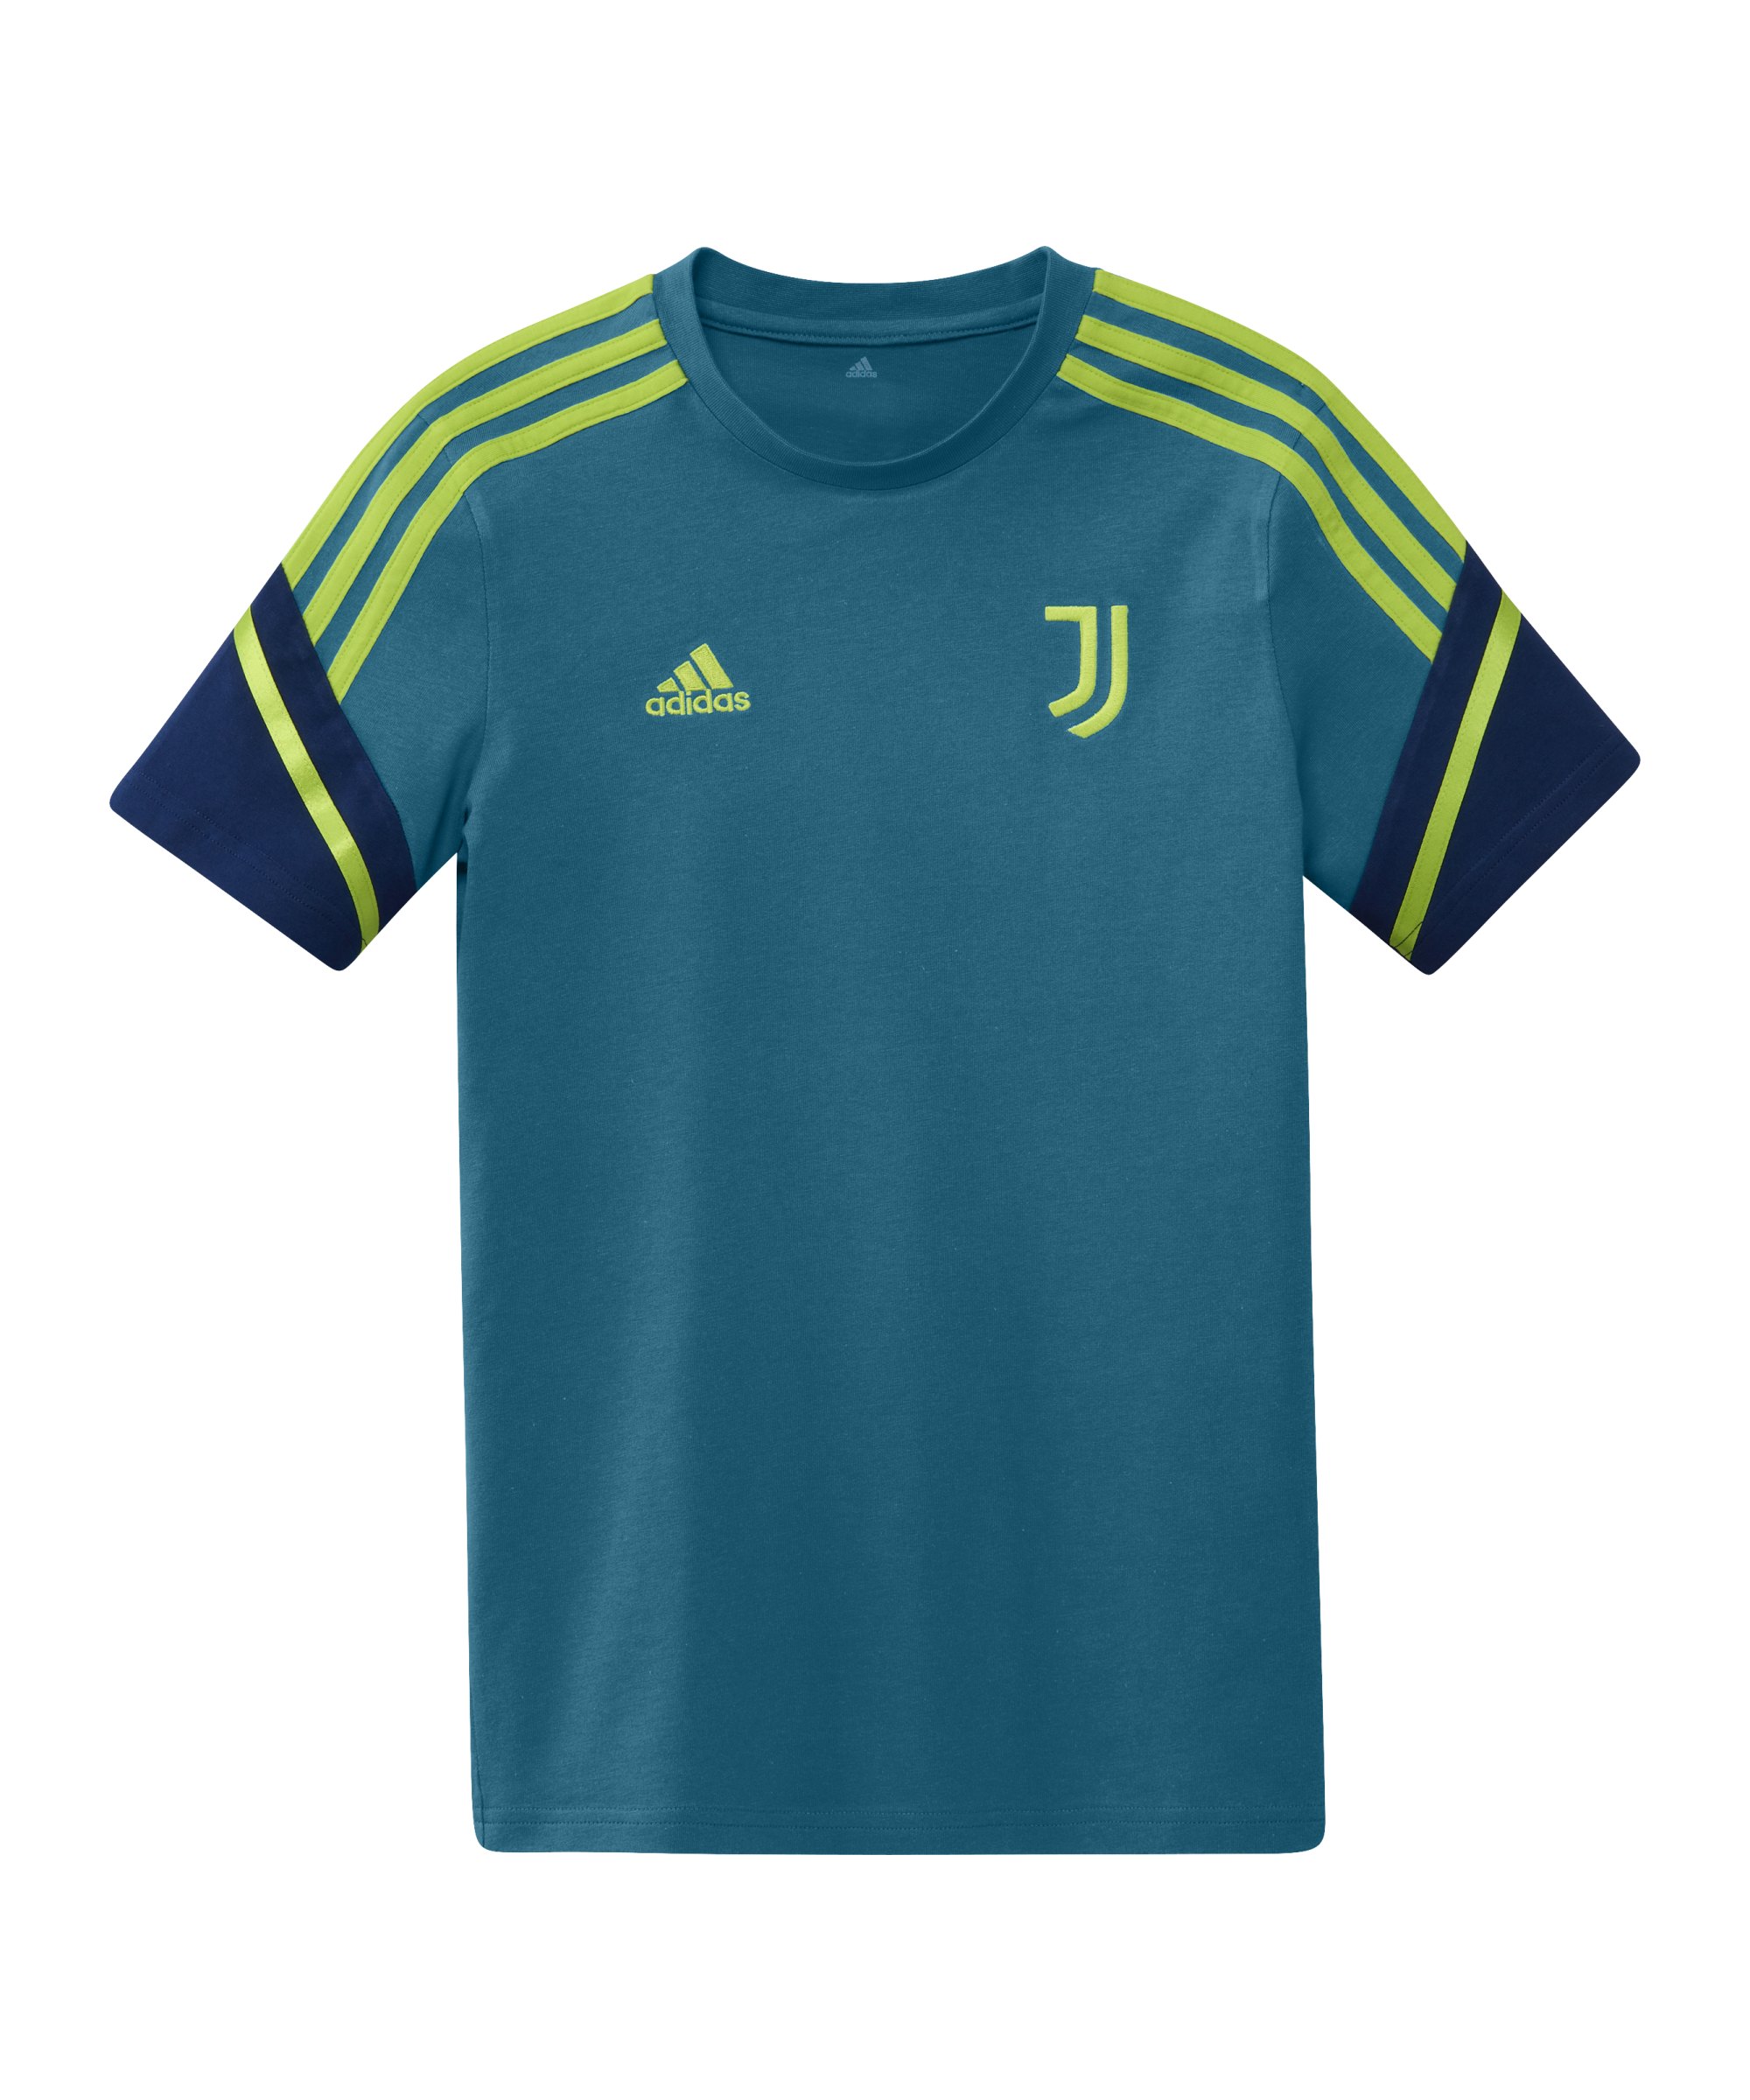 adidas Juventus Turin T-Shirt Kids Blau - blau